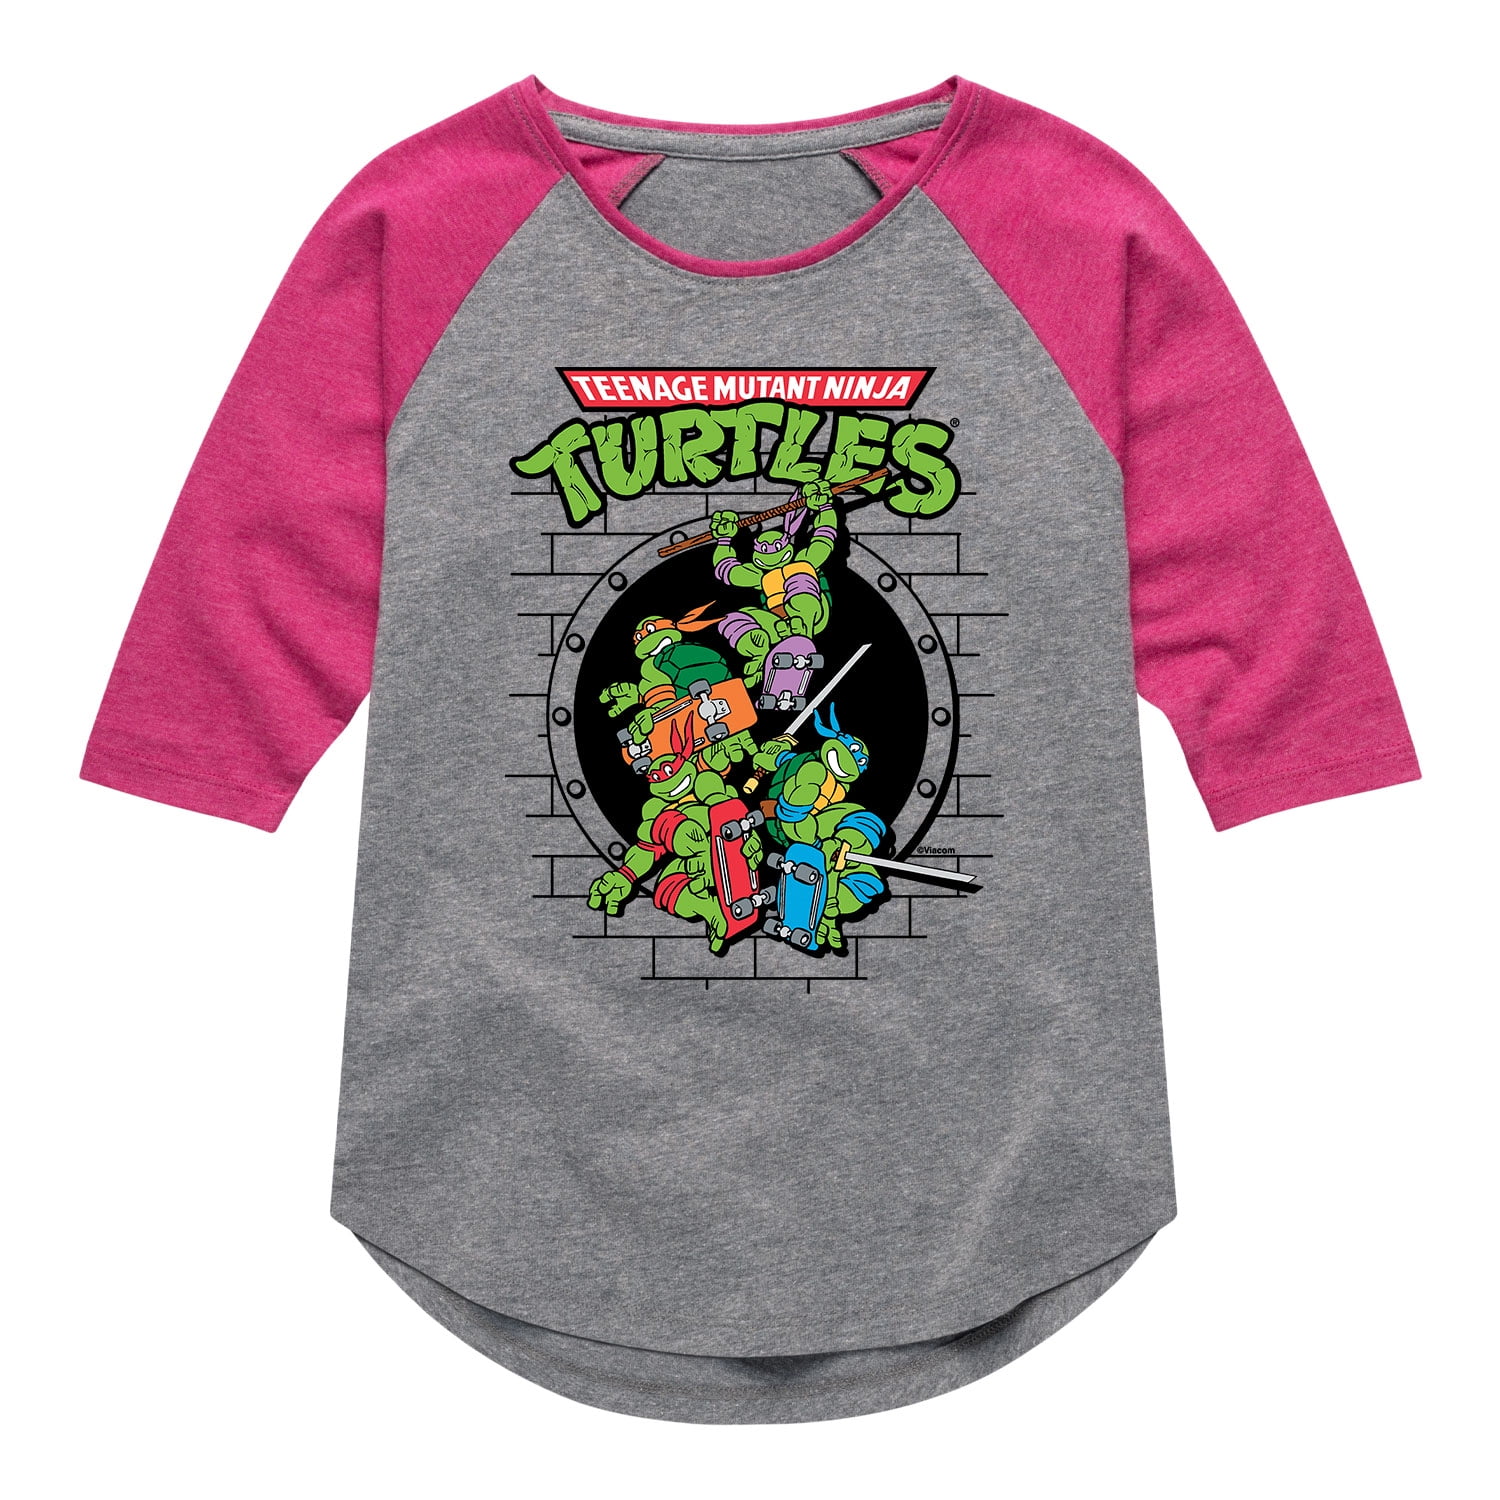 Teenage Mutant Ninja Turtles - Sewer Skateboard - Girls Shirt Tail Raglan